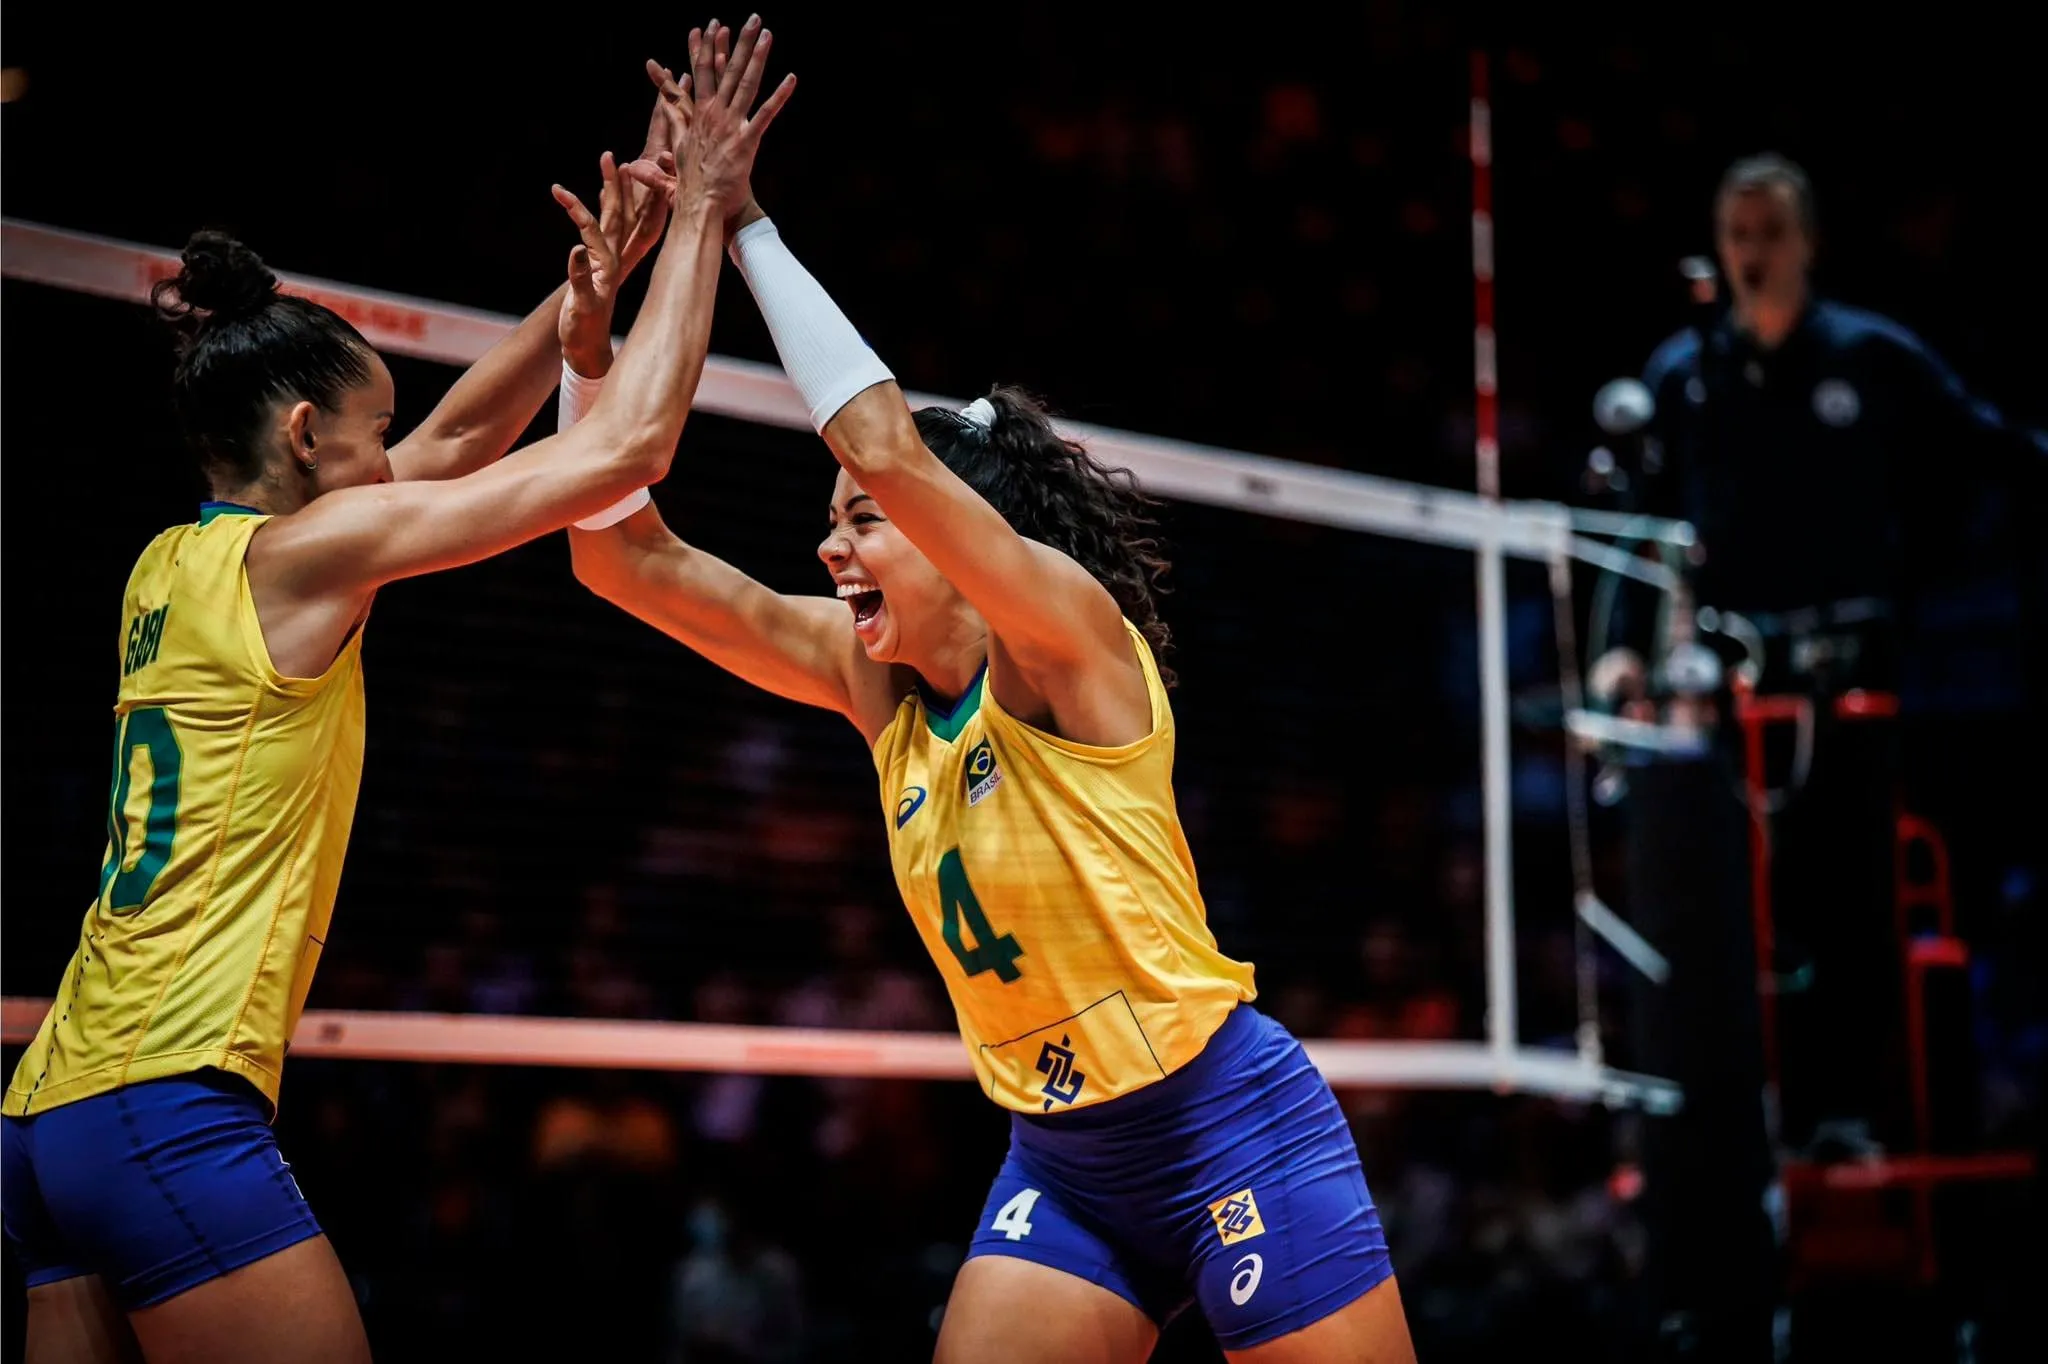 Bóng chuyền nữ Trung Quốc thắng kịch tính Hà Lan - Brazil thị uy sức mạnh trước Puerto Rico